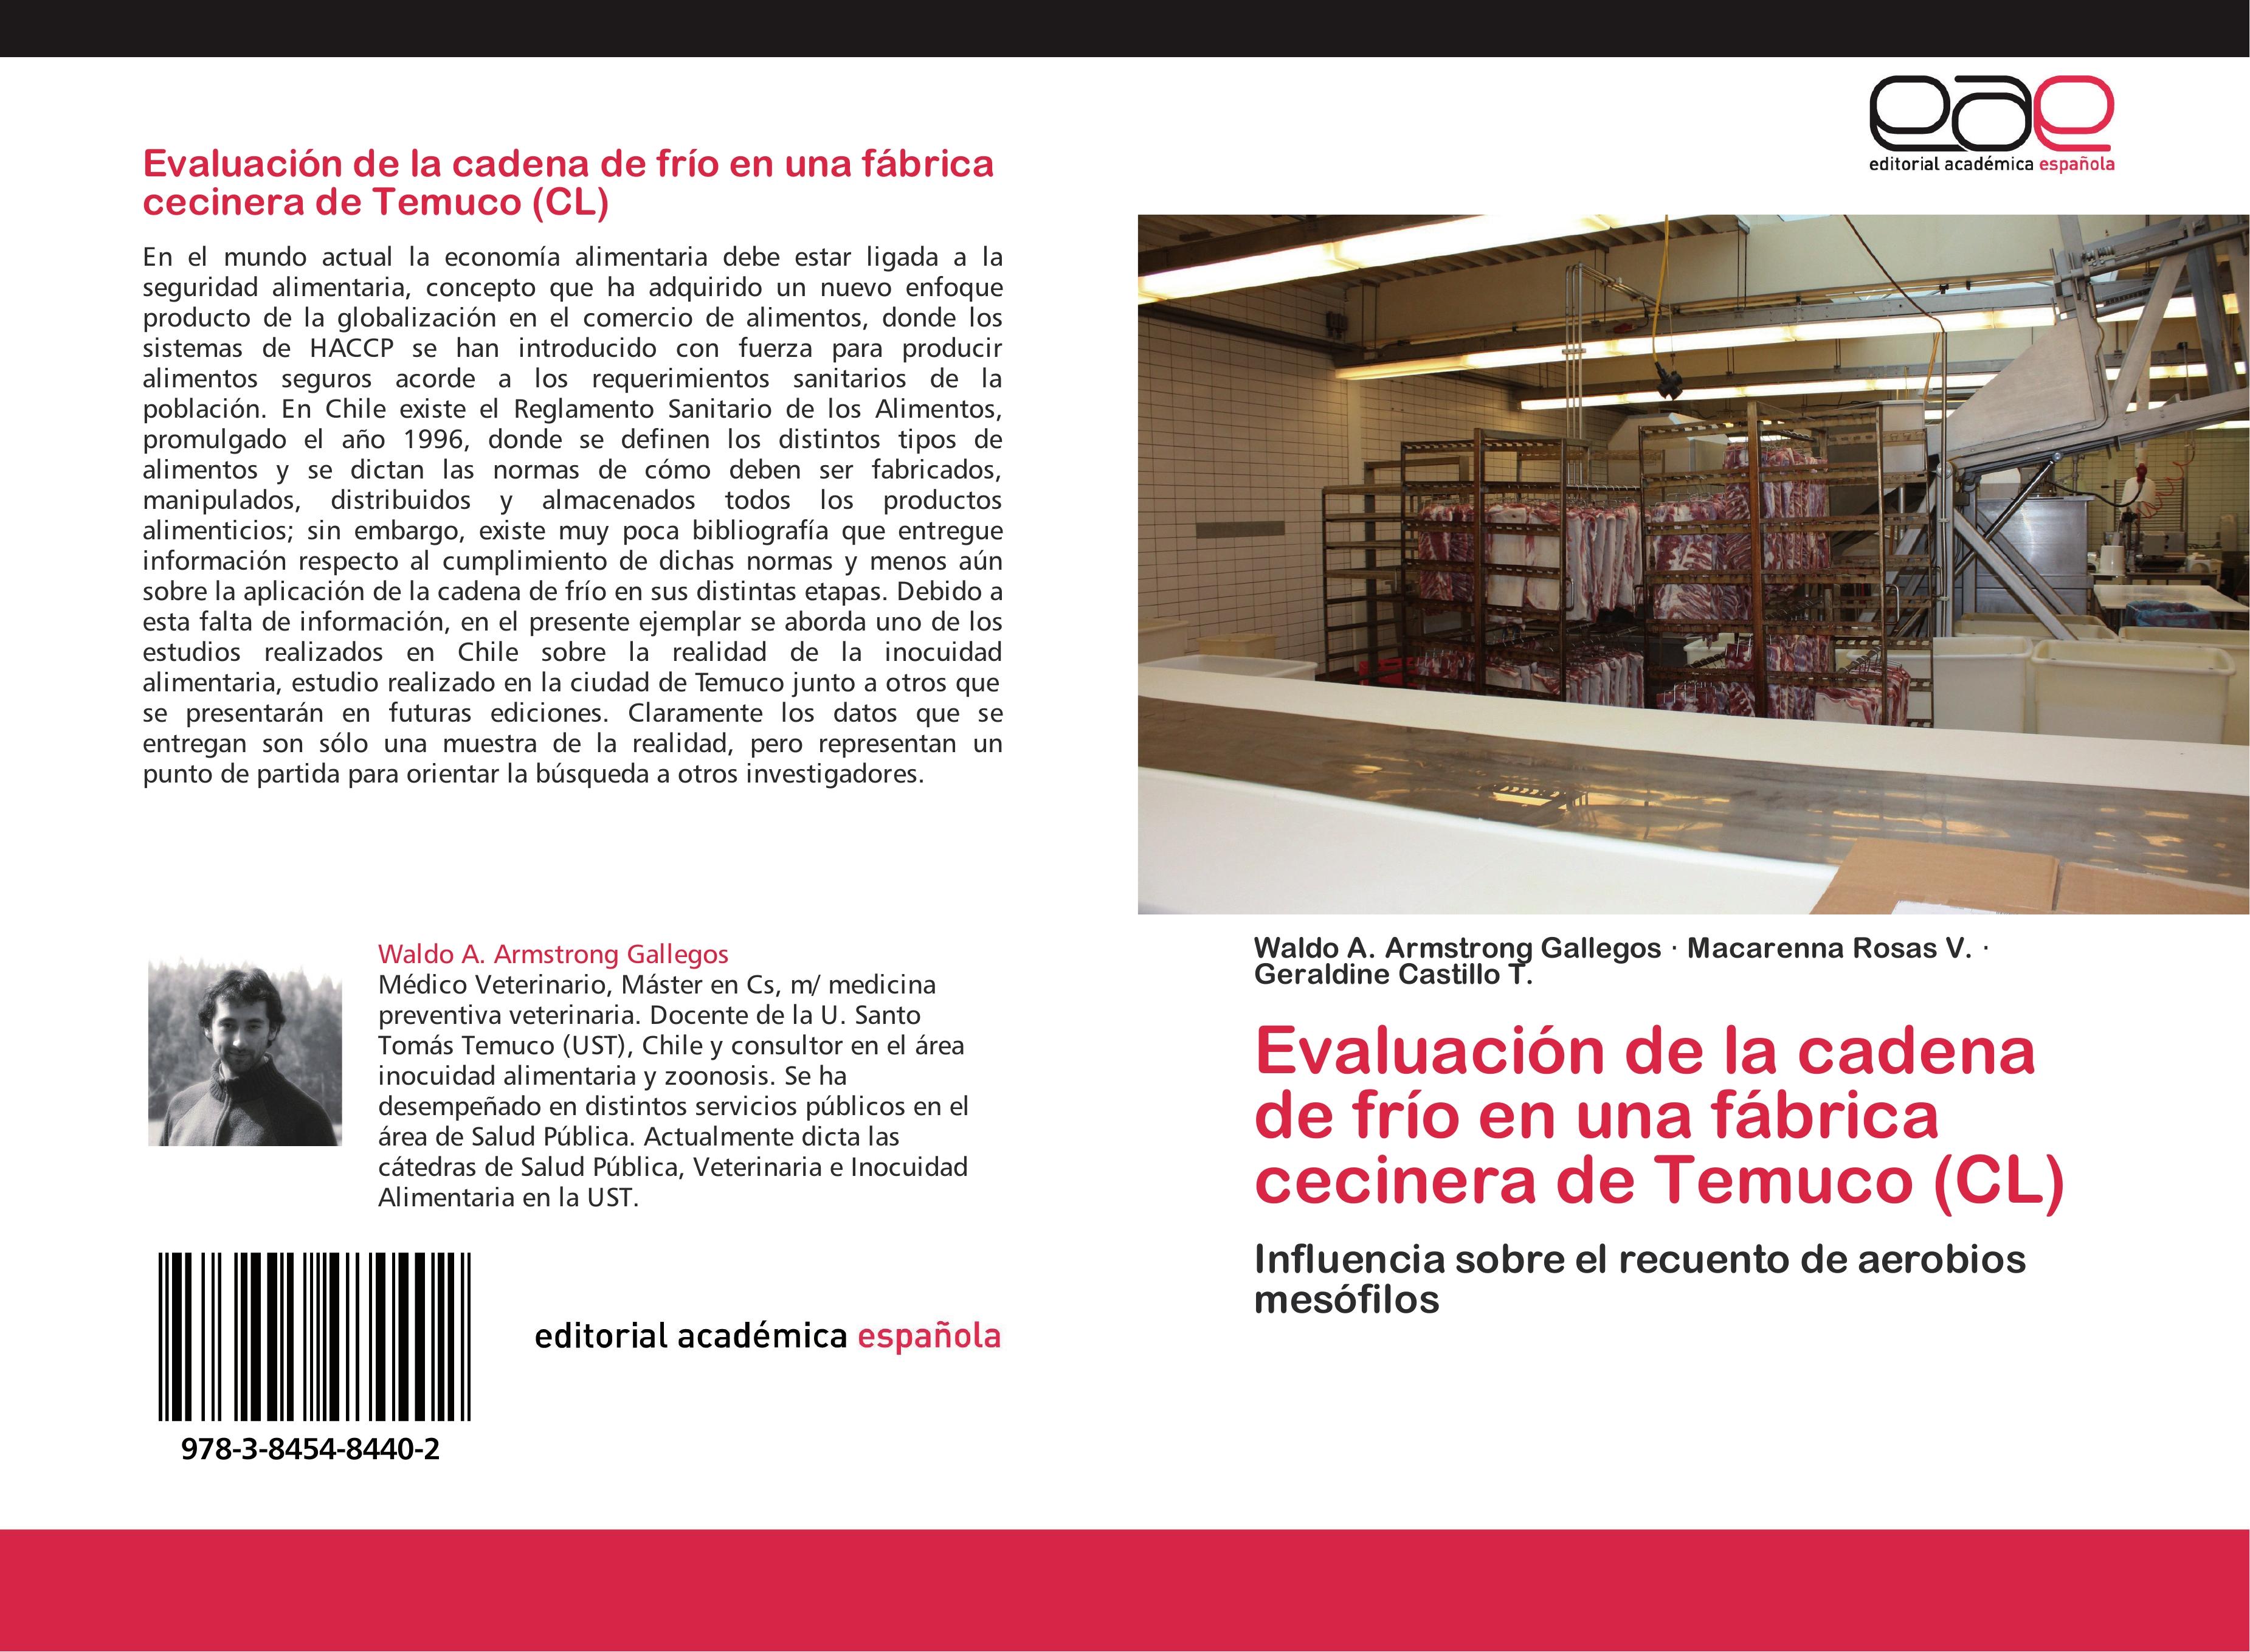 Evaluación de la cadena de frío en una fábrica cecinera de Temuco (CL) - Waldo A. Armstrong Gallegos Macarenna Rosas V. Geraldine Castillo T.